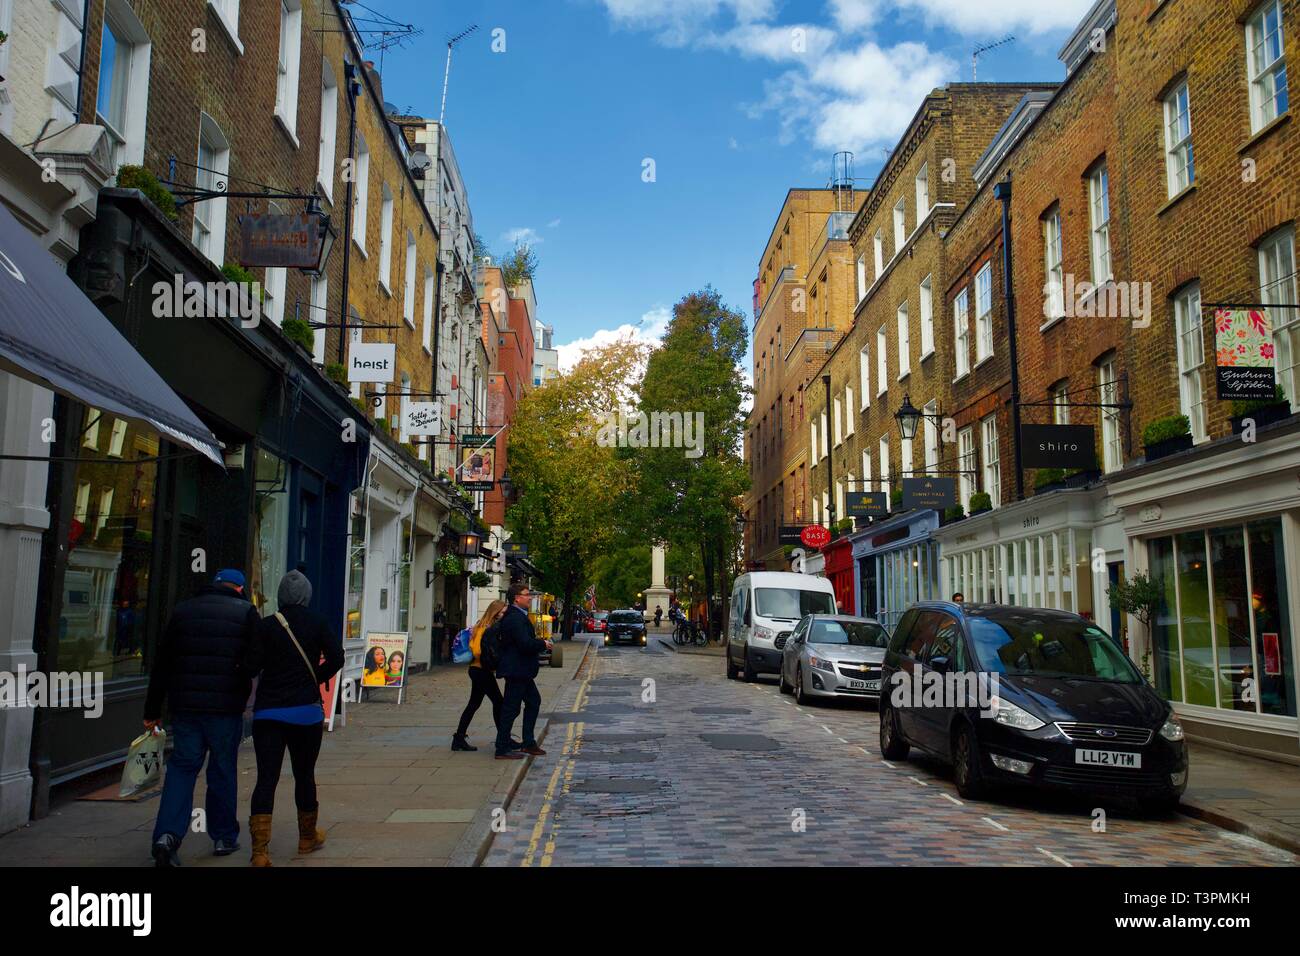 Covent Garden, London, England. Stock Photo